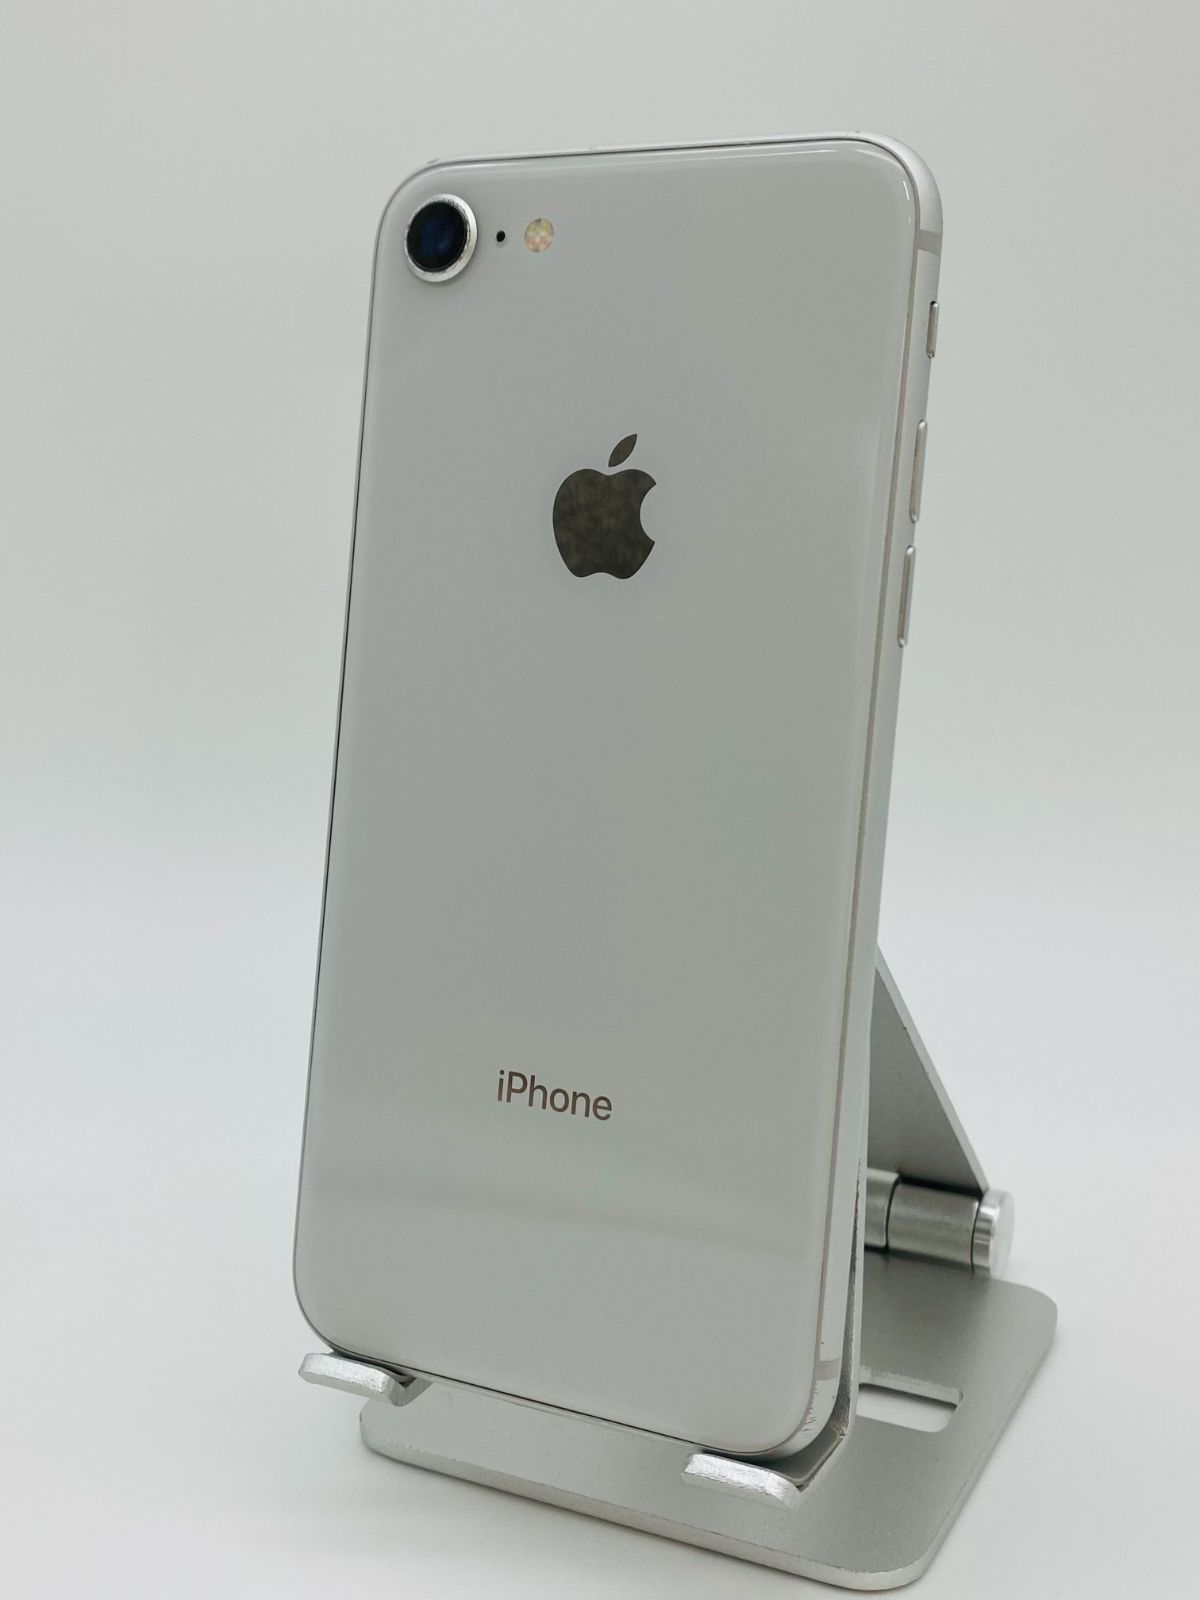 大幅値引 iPhone8 64GB シルバー/シムフリー/大容量2300mAh 新品